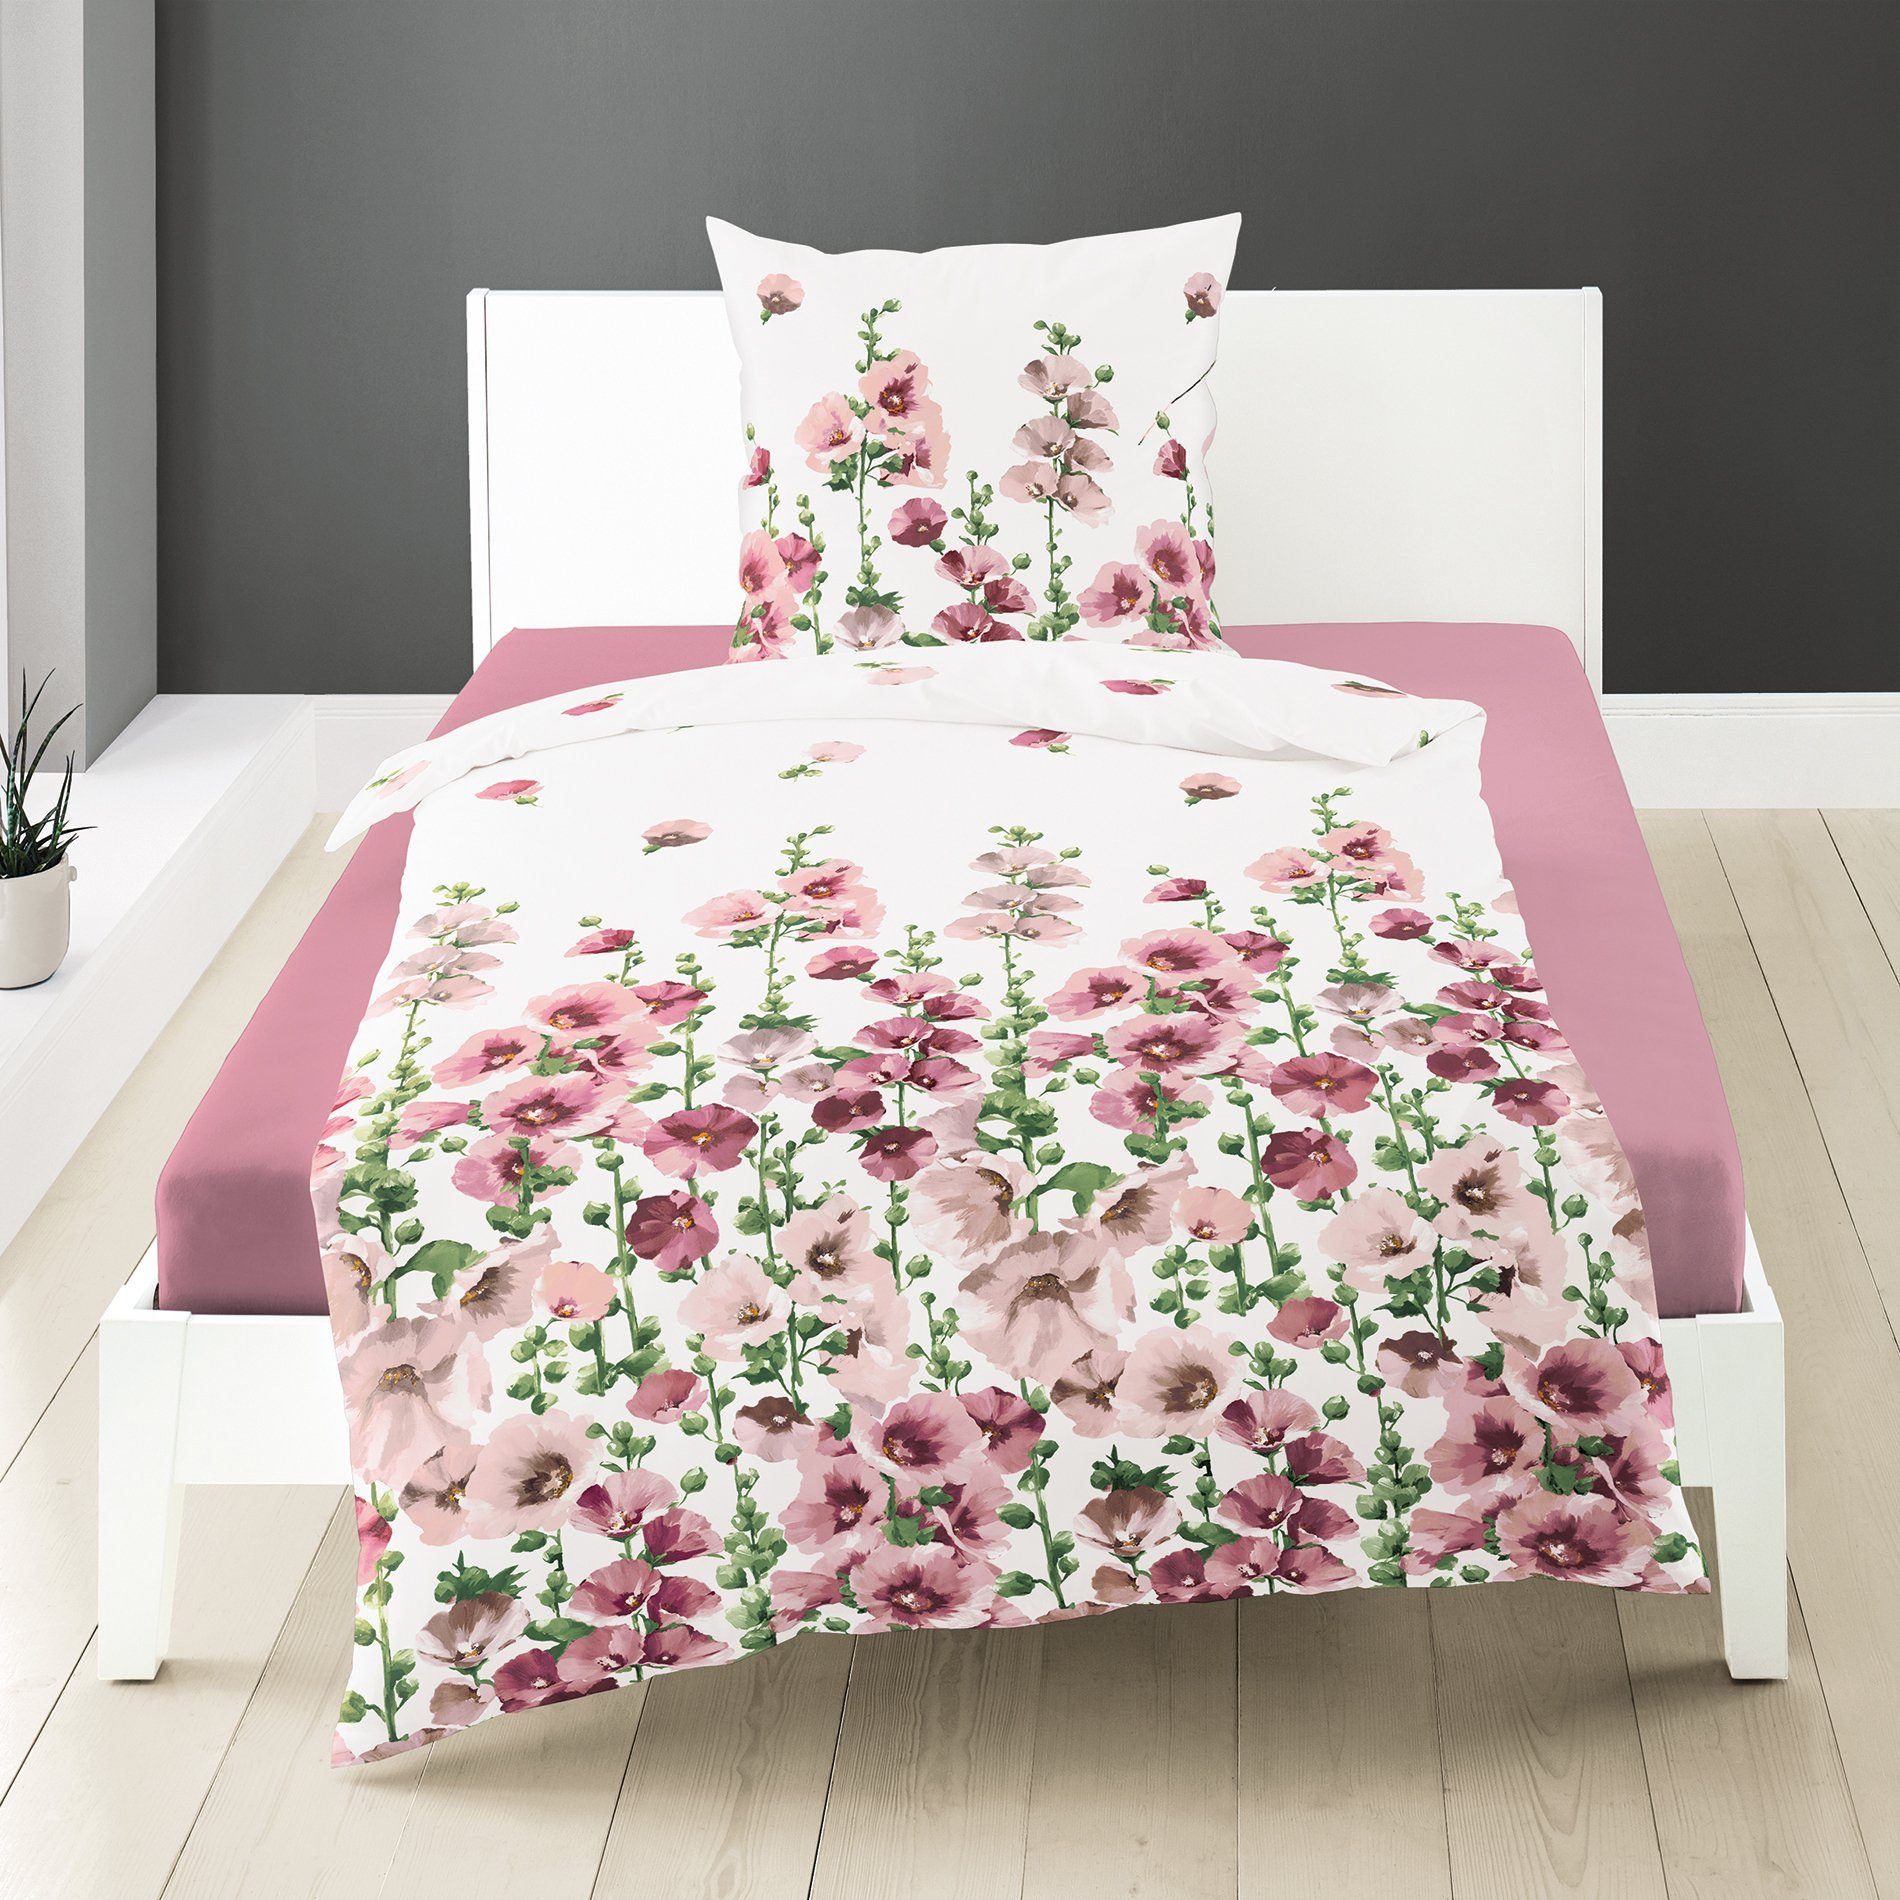 frischen teilig, Traumschloss, Blumen Hintergrund auf Bettwäsche 2 in Baumwolle, Seersucker, mit rosa weißem